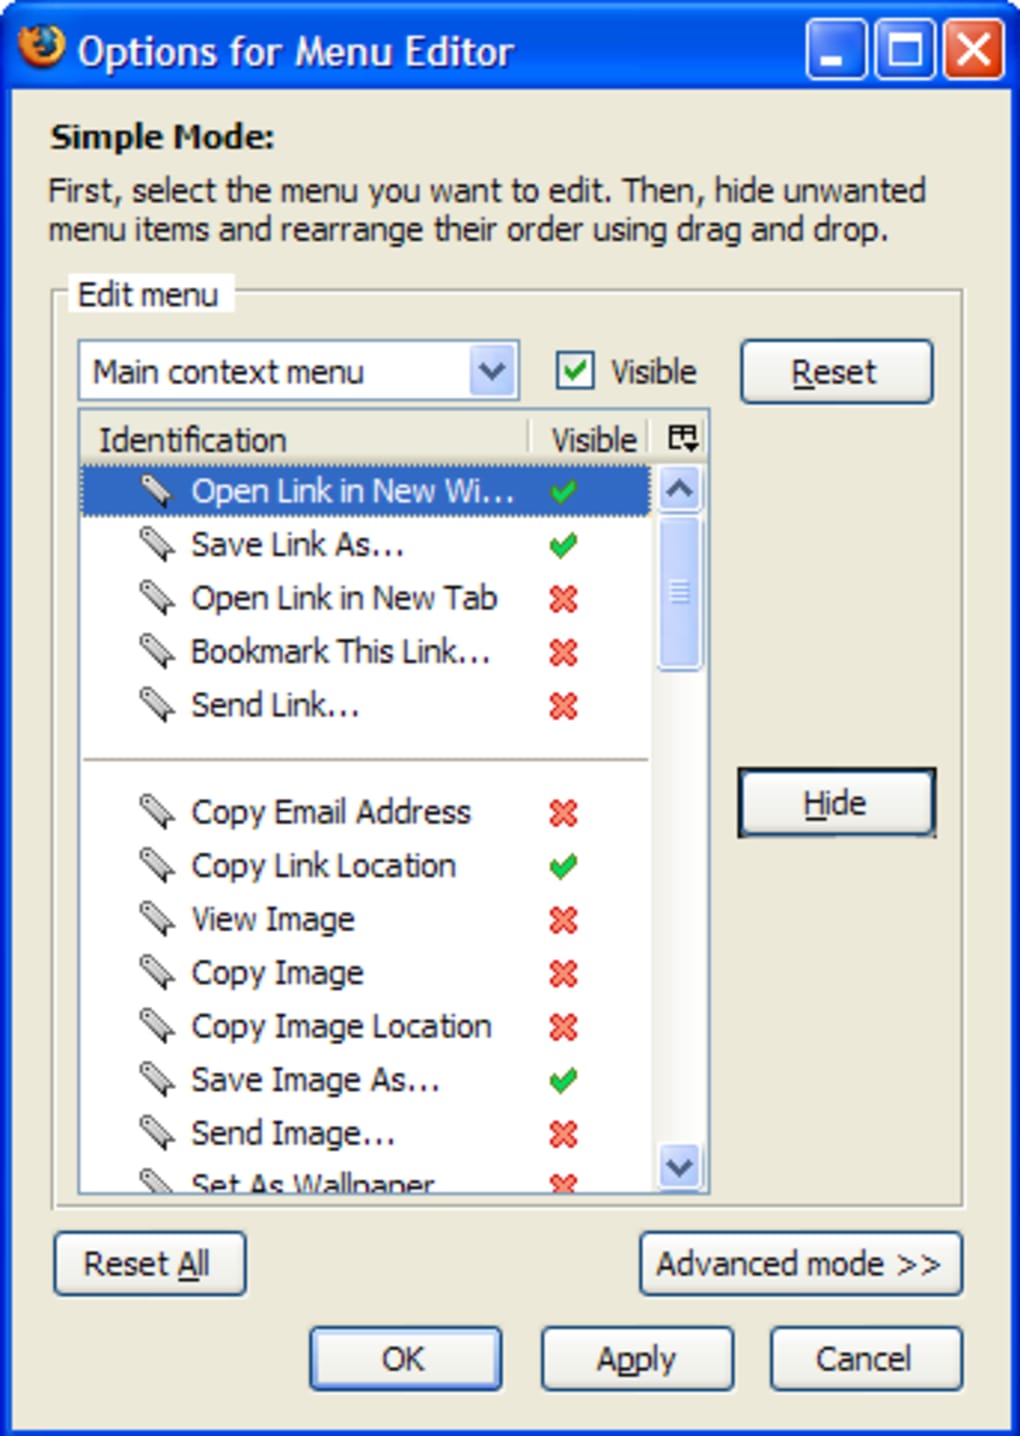 Context menu Editor. Simple Editor. MENUEDITOR 1.0.3.122.